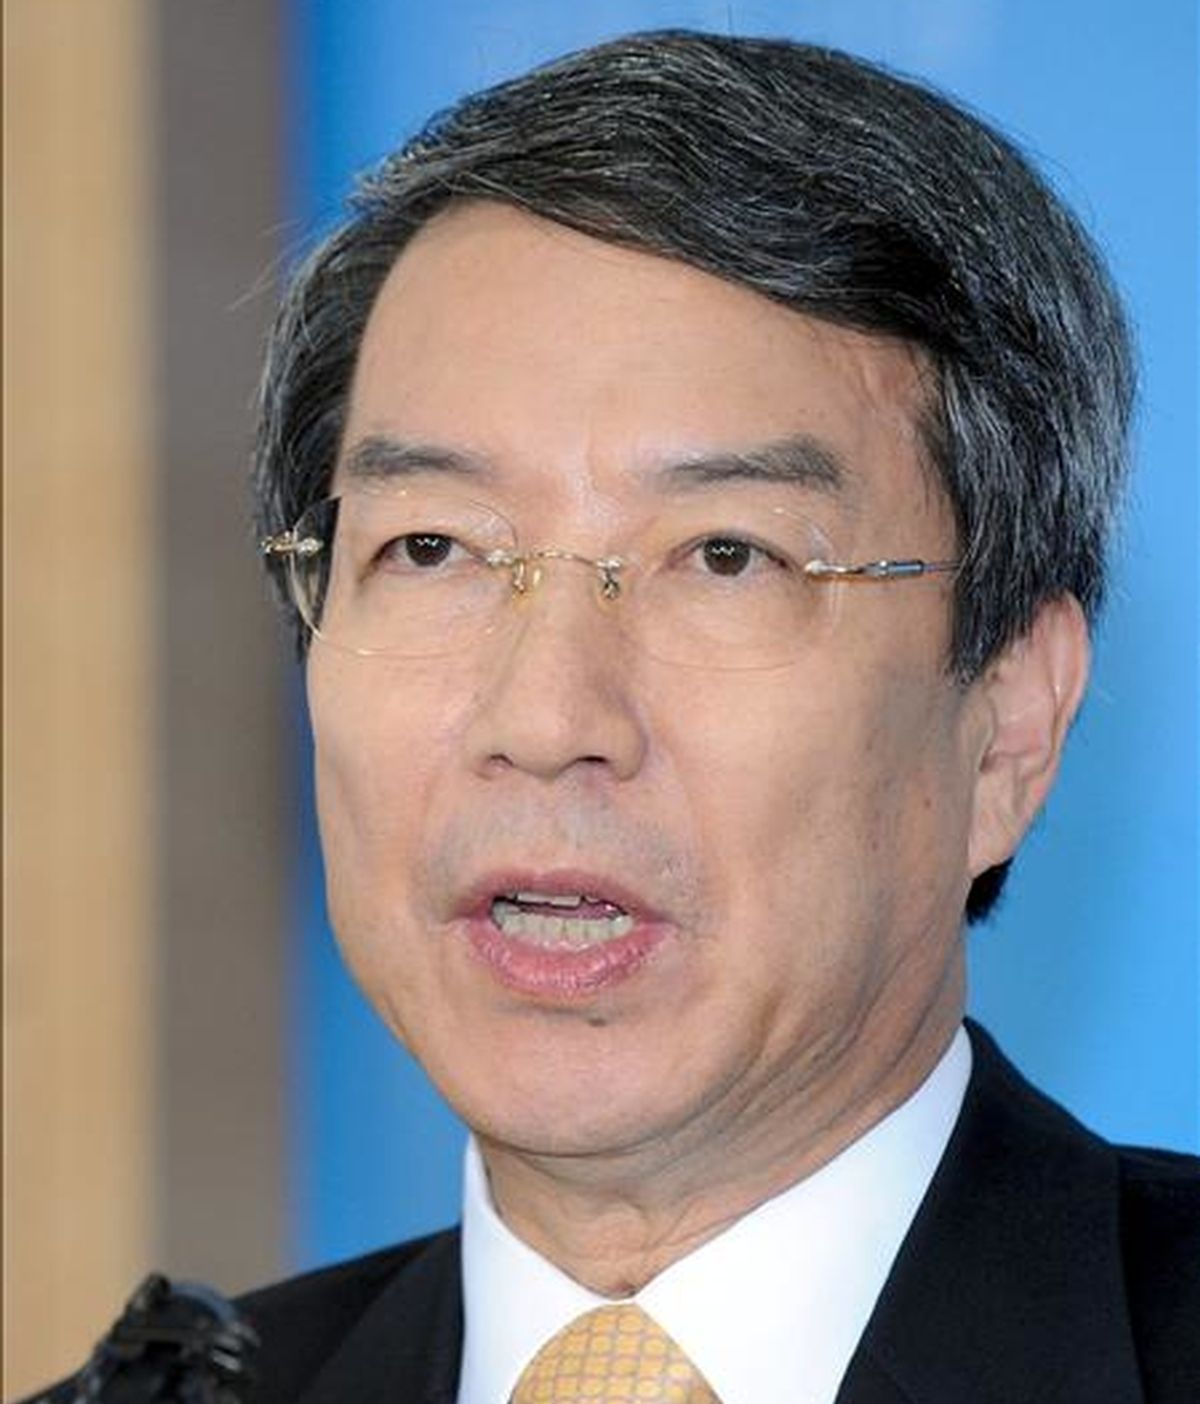 El primer ministro surcoreano, Chung Un-Chan, da una rueda de prensa sobre su dimisión en Seúl (Corea del Sur). El primer ministro Chung Un-chan presentó hoy su dimisión tras el reciente rechazo en el Parlamento de la ley que promovía para crear un centro de negocios en una región central del país. EFE/Bae Jun-Yeong